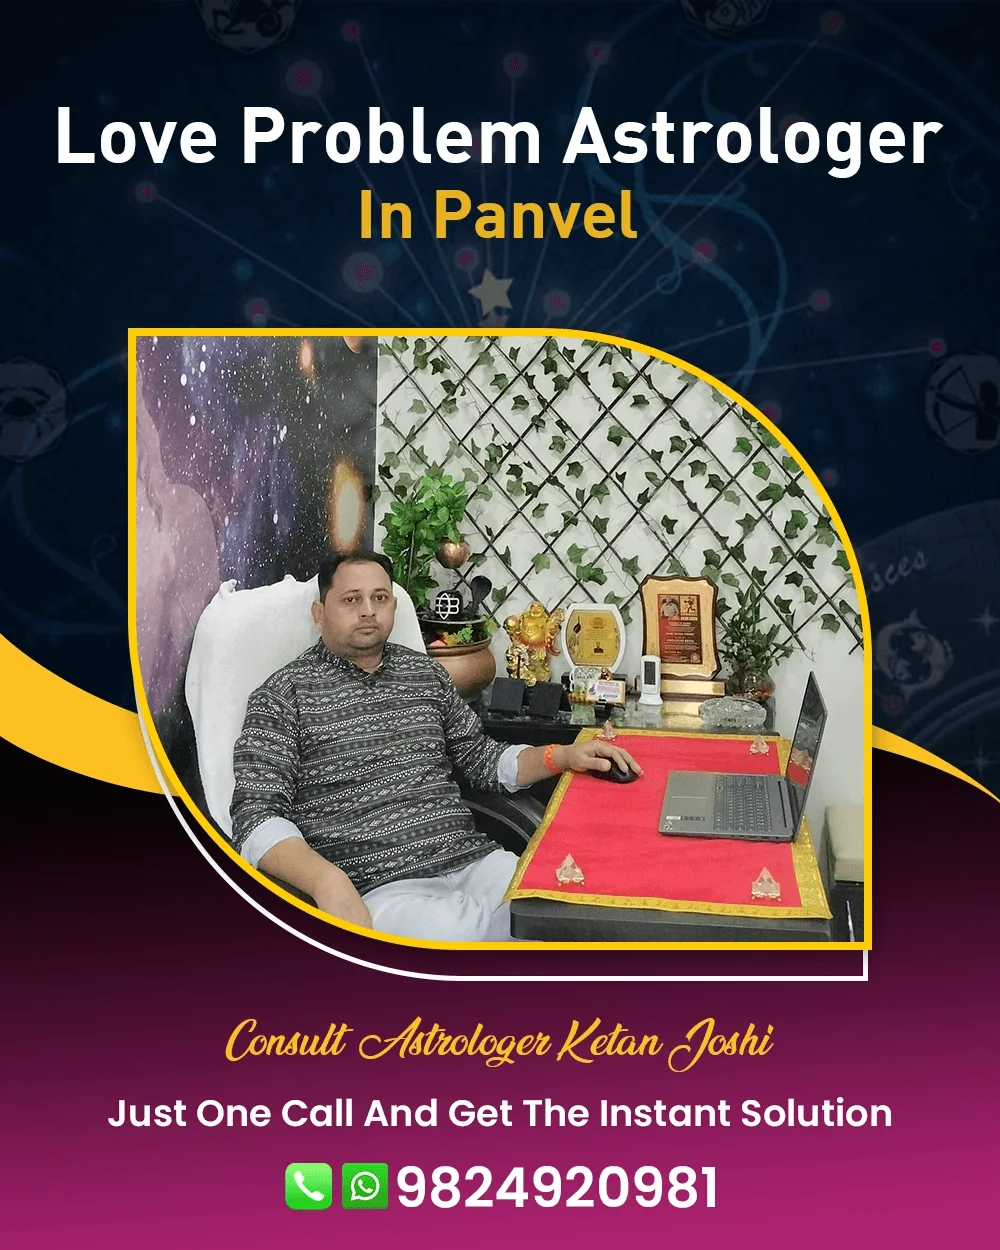 Love Problem Astrologer In Panvel